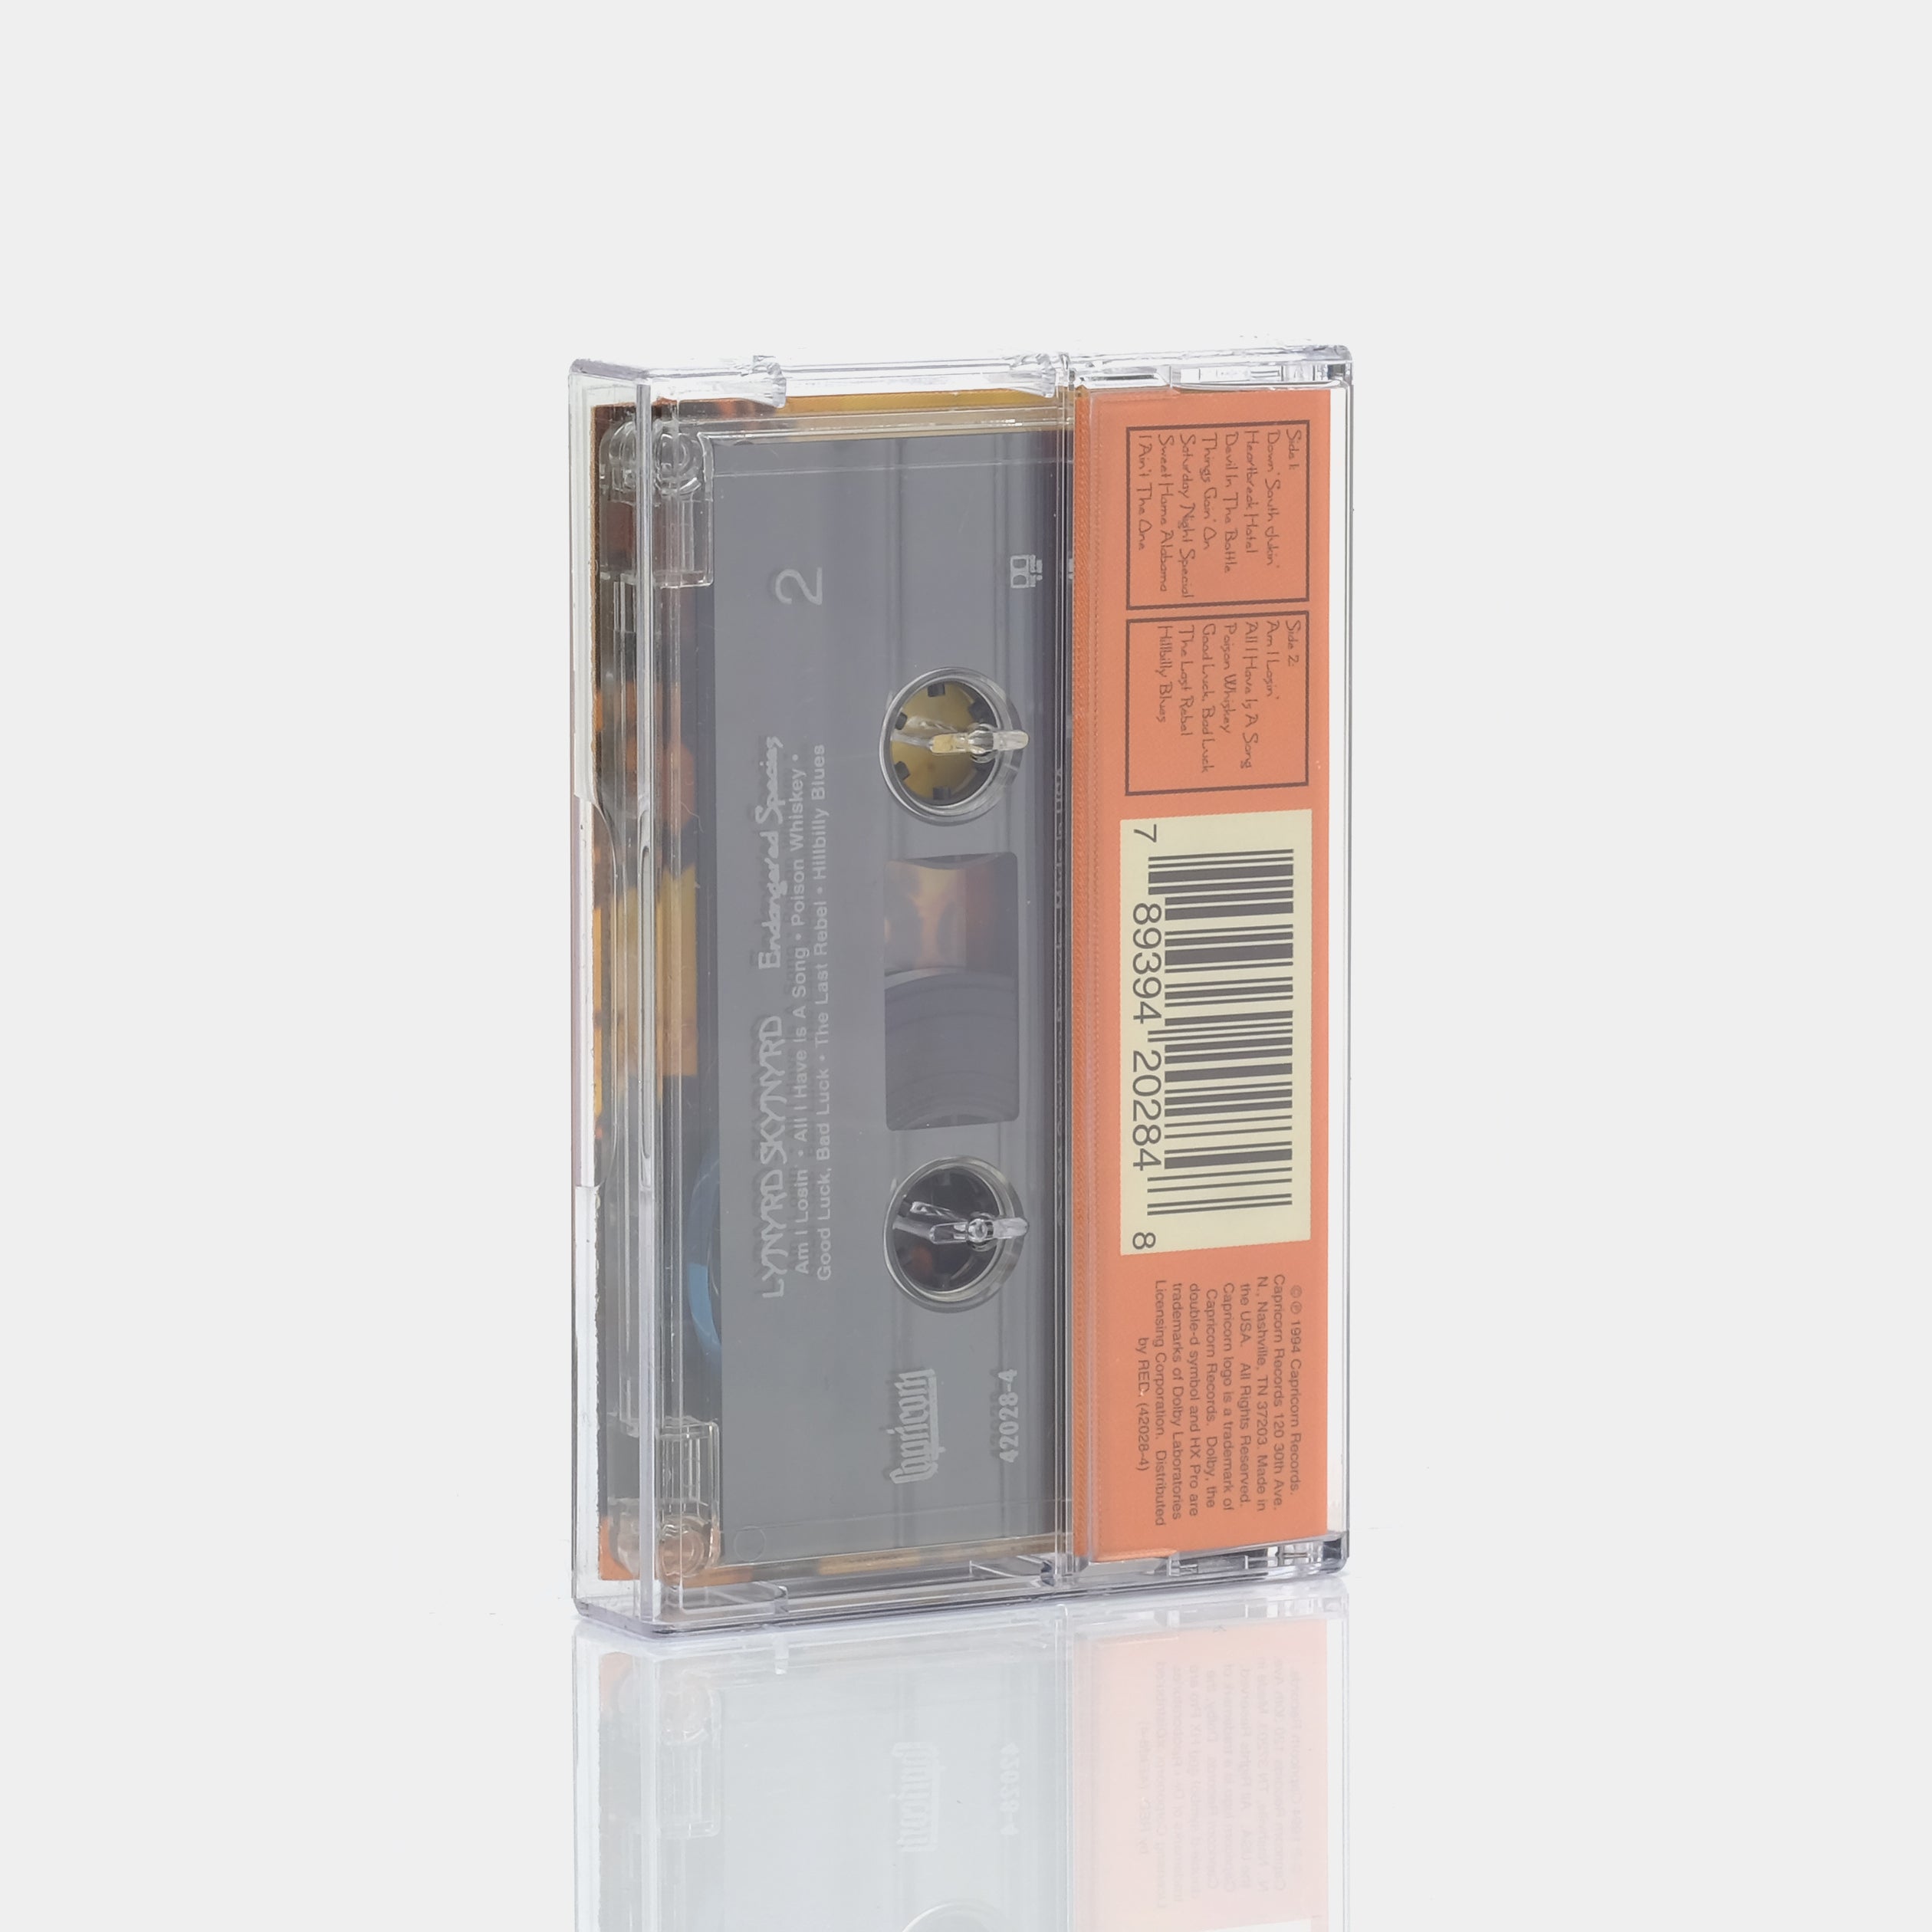 Lynyrd Skynyrd - Endangered Species Cassette Tape